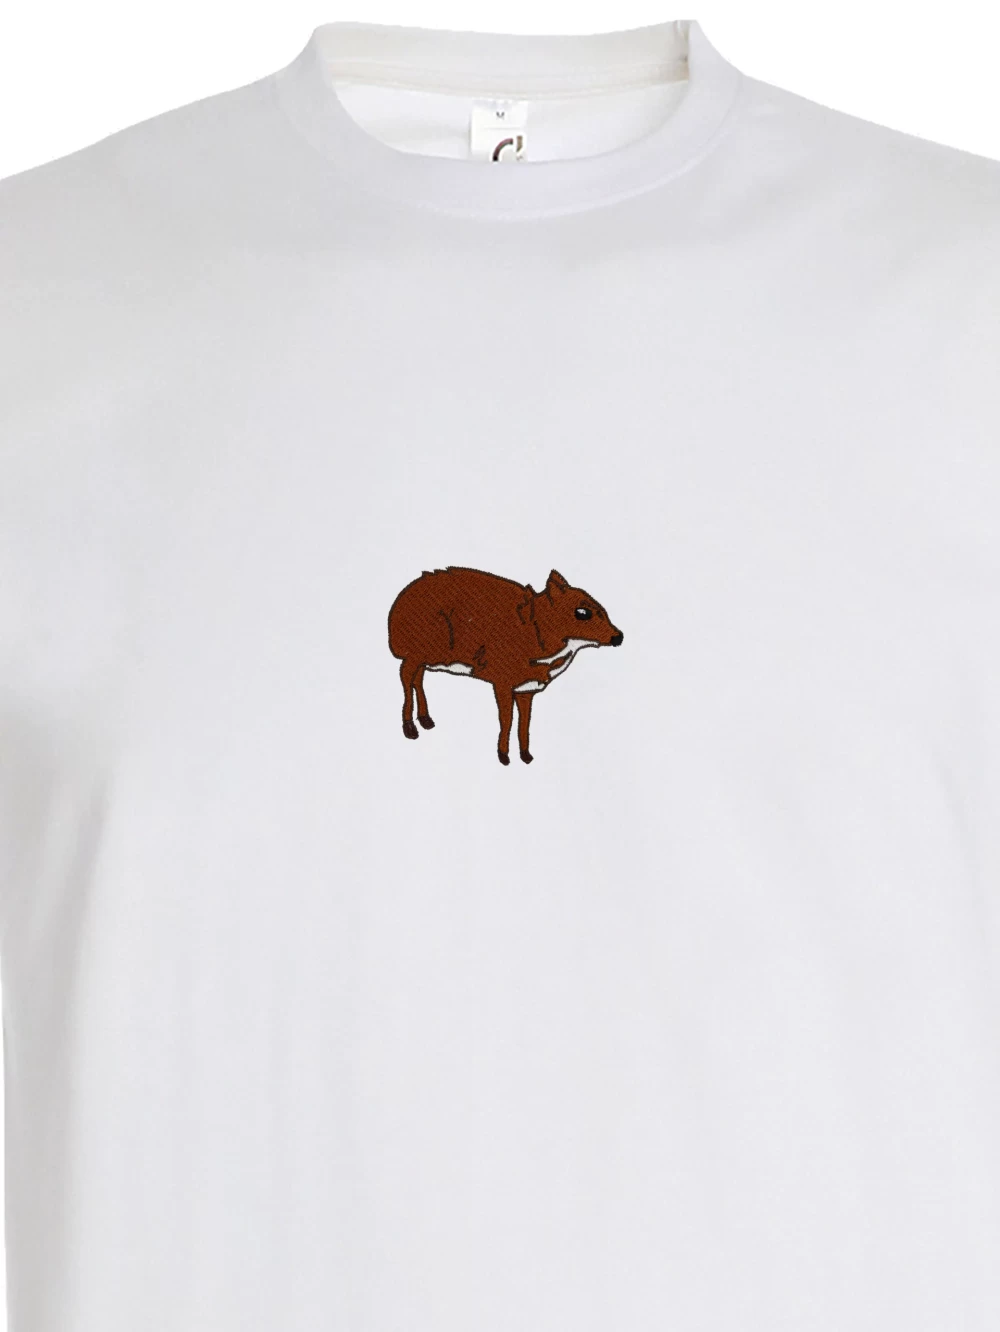 Koszulka - Myszojeleń